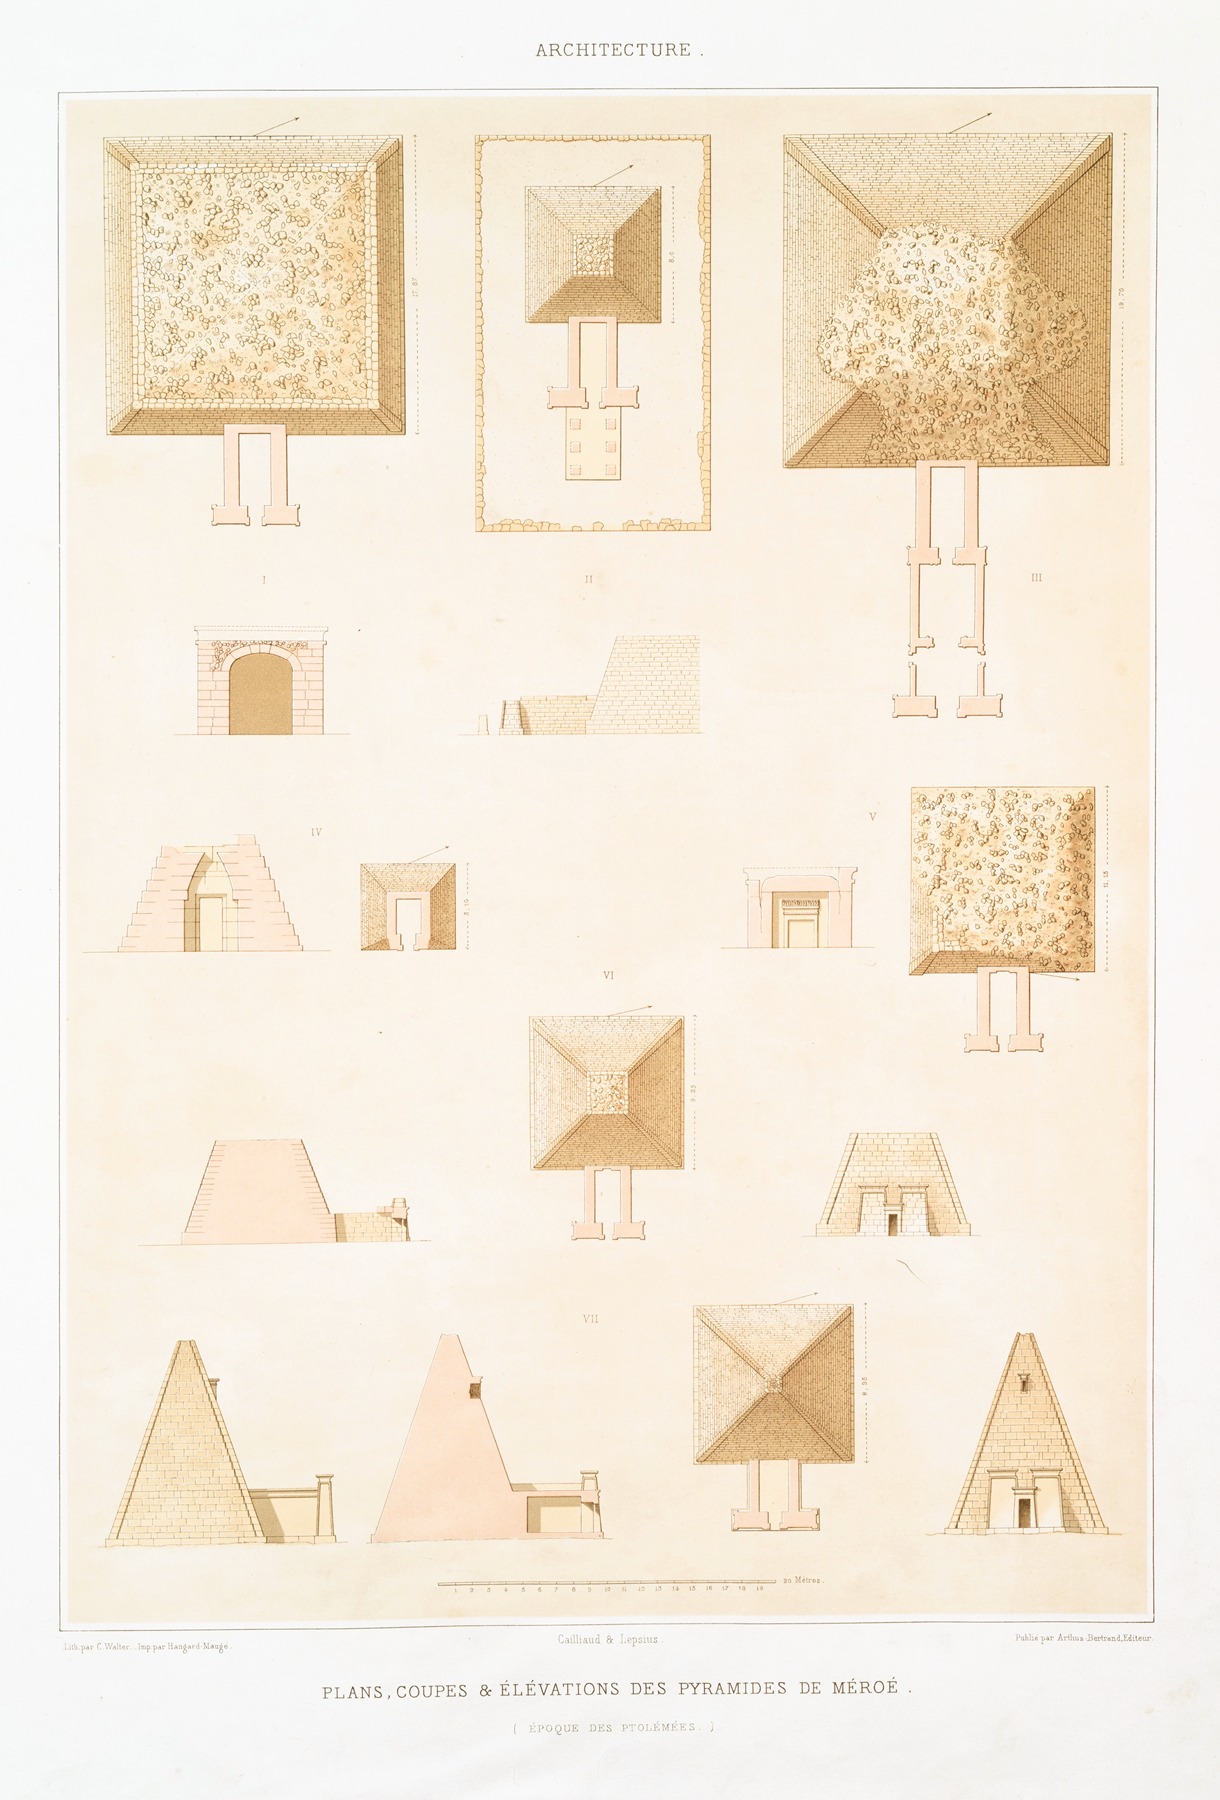 Émile Prisse d'Avennes - Architecture; plans, coupes & élévations des pyramides de Méroé (époque des Ptolémées)